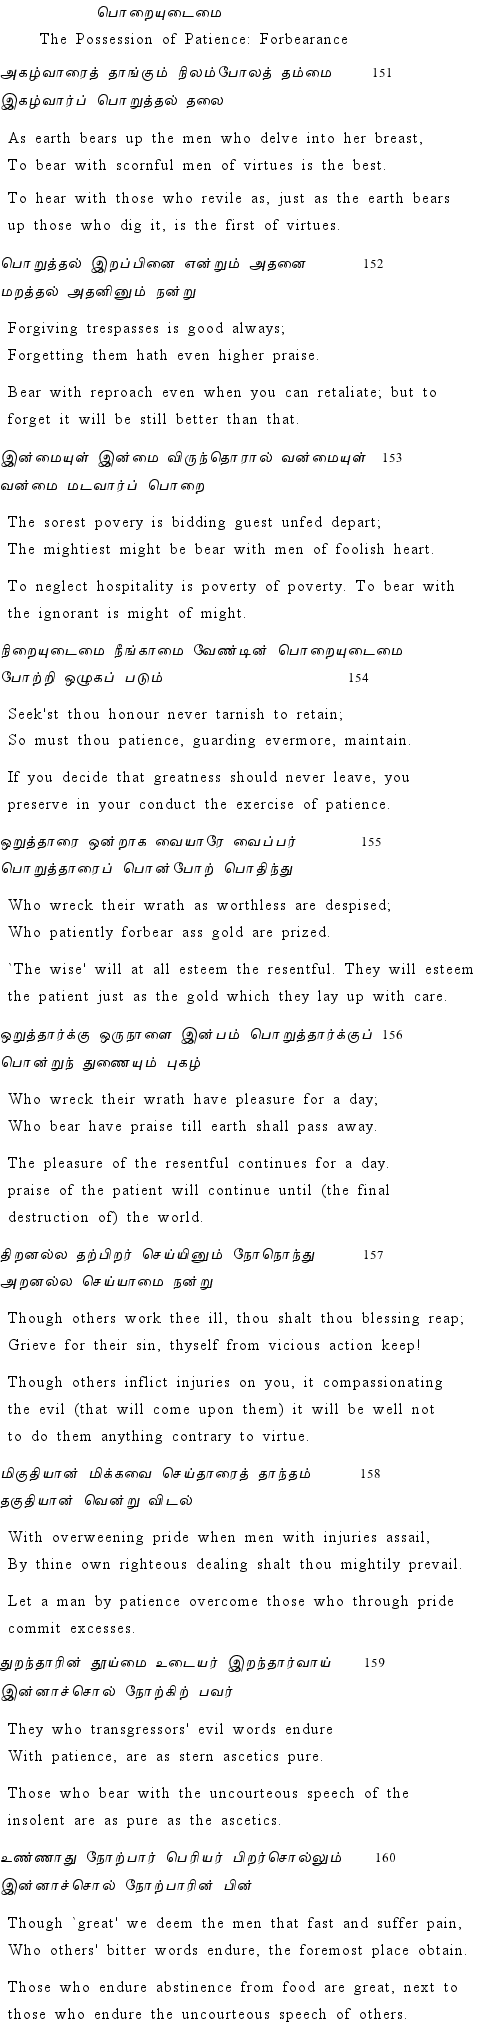 Text of Adhikaram 16